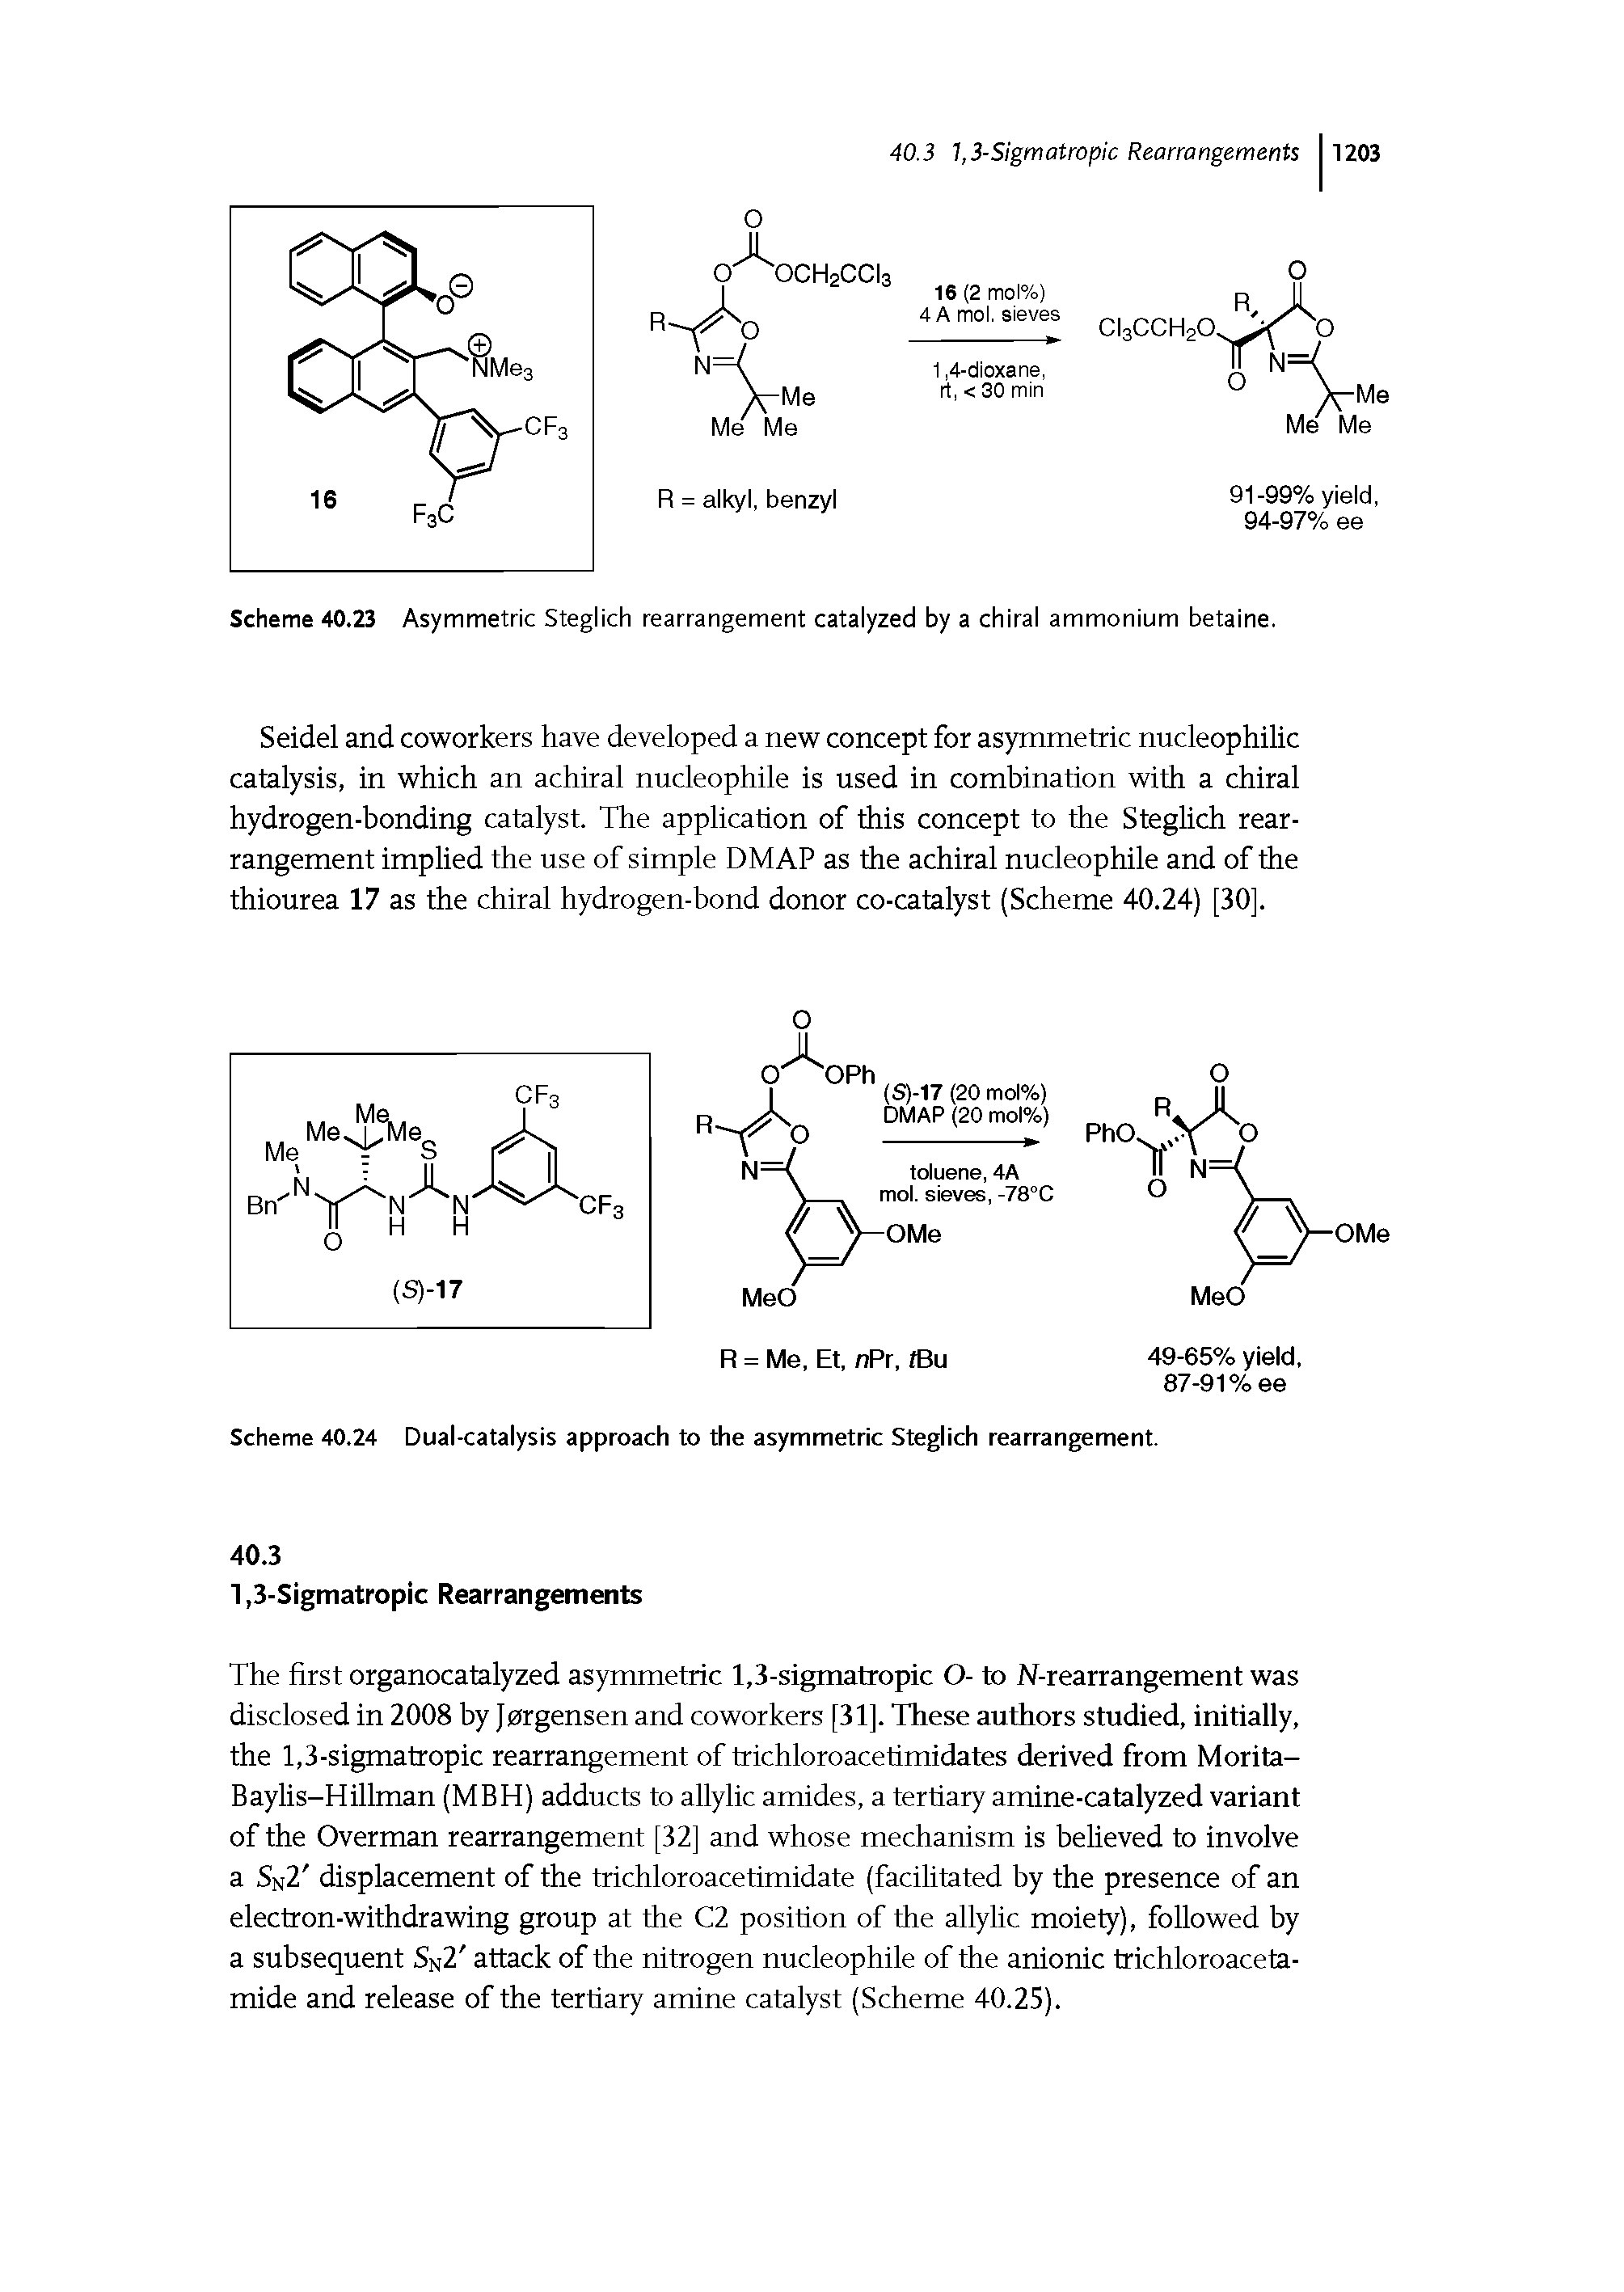 Scheme 40.23 Asymmetric Steglich rearrangement catalyzed by a chiral ammonium betaine.